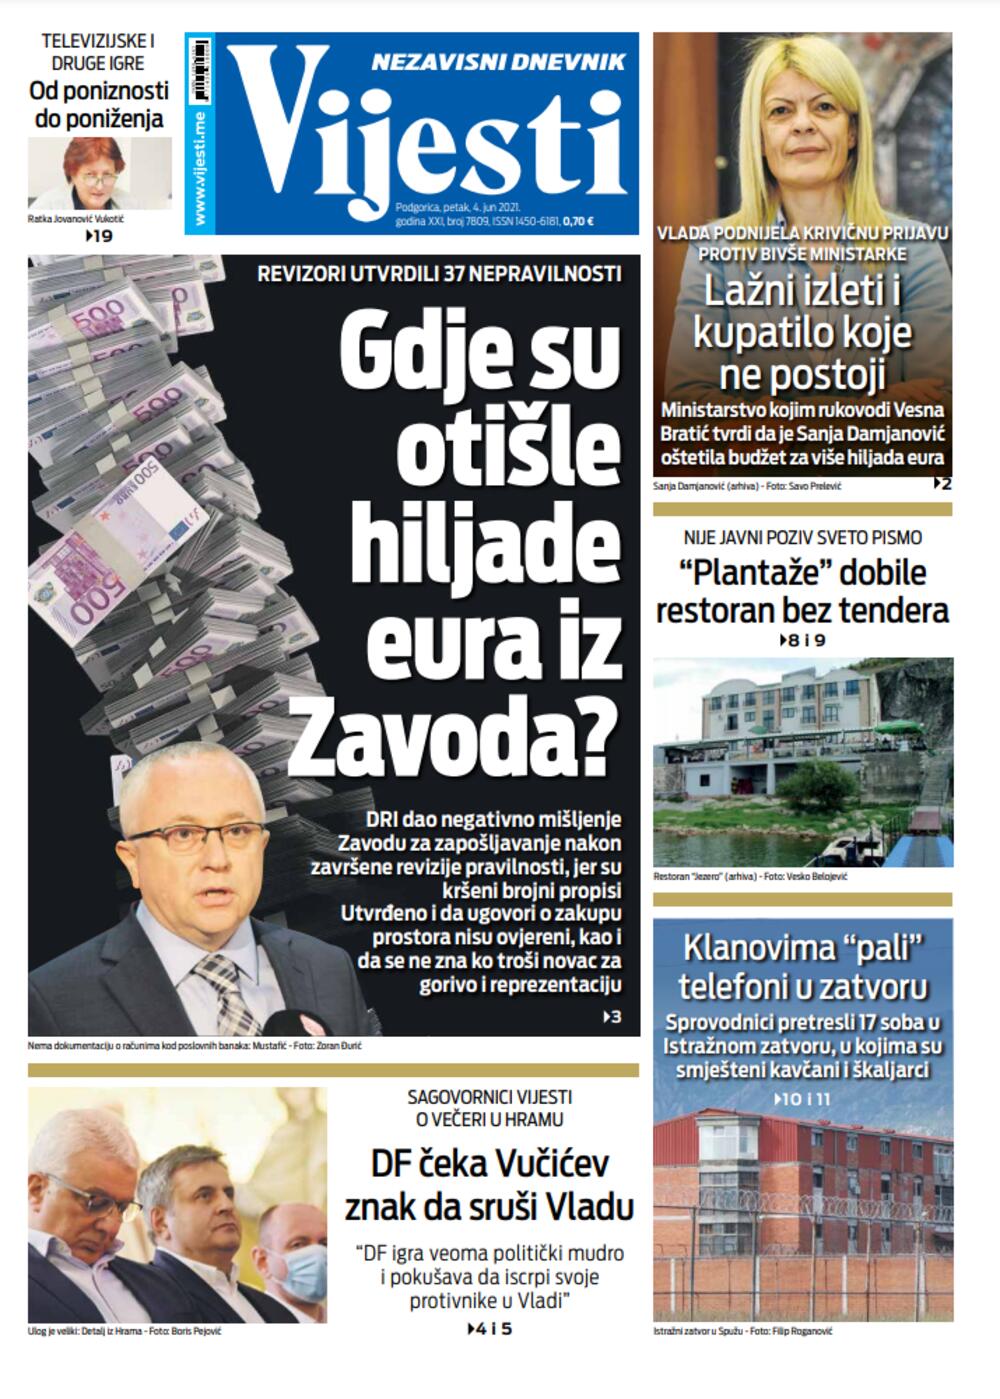 Naslovna strana "Vijesti" 4.jun 2021. godine, Foto: Vijesti